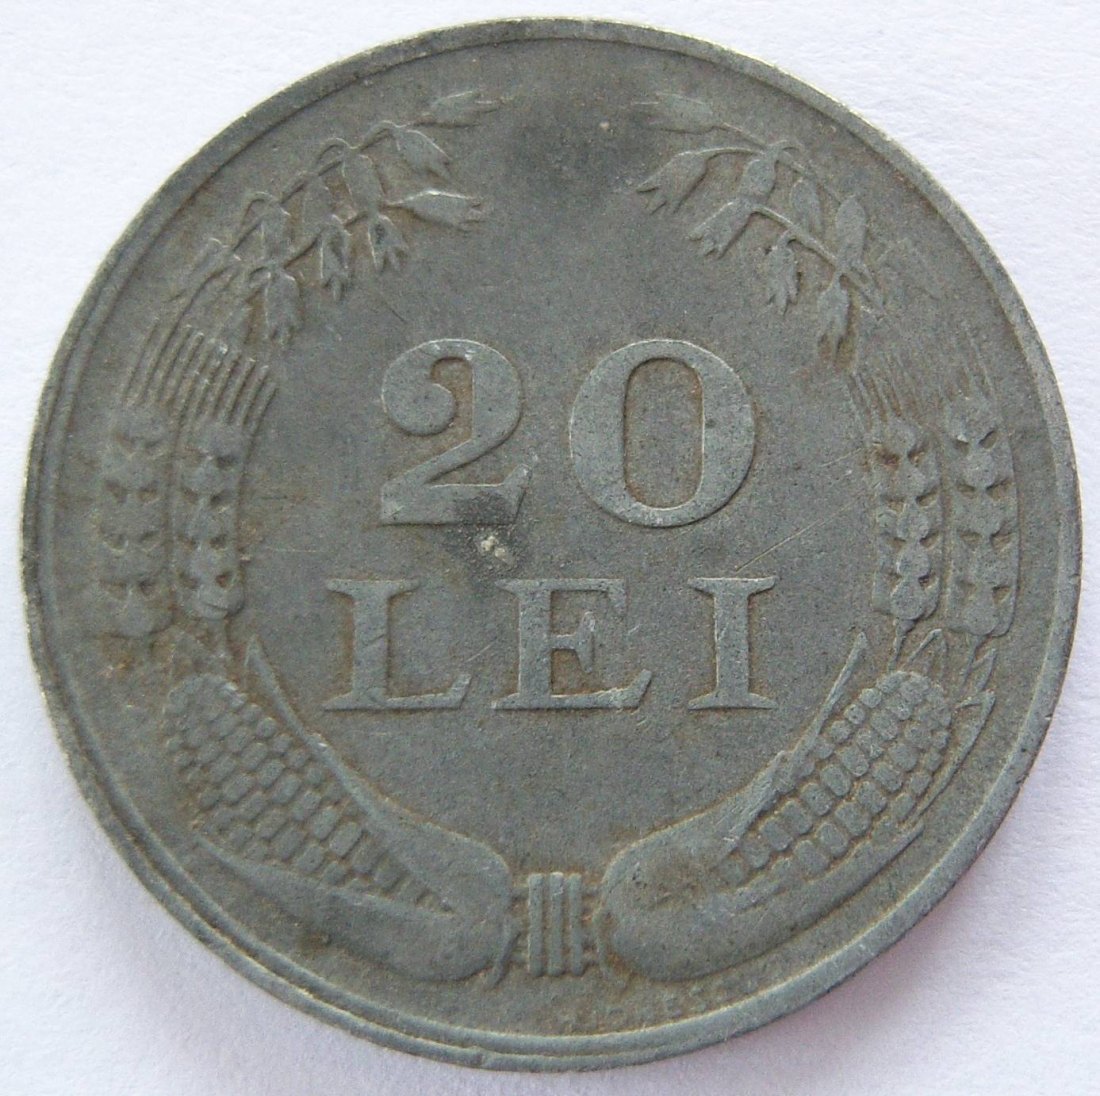  RUMÄNIEN ROMANIA 20 Lei 1944   